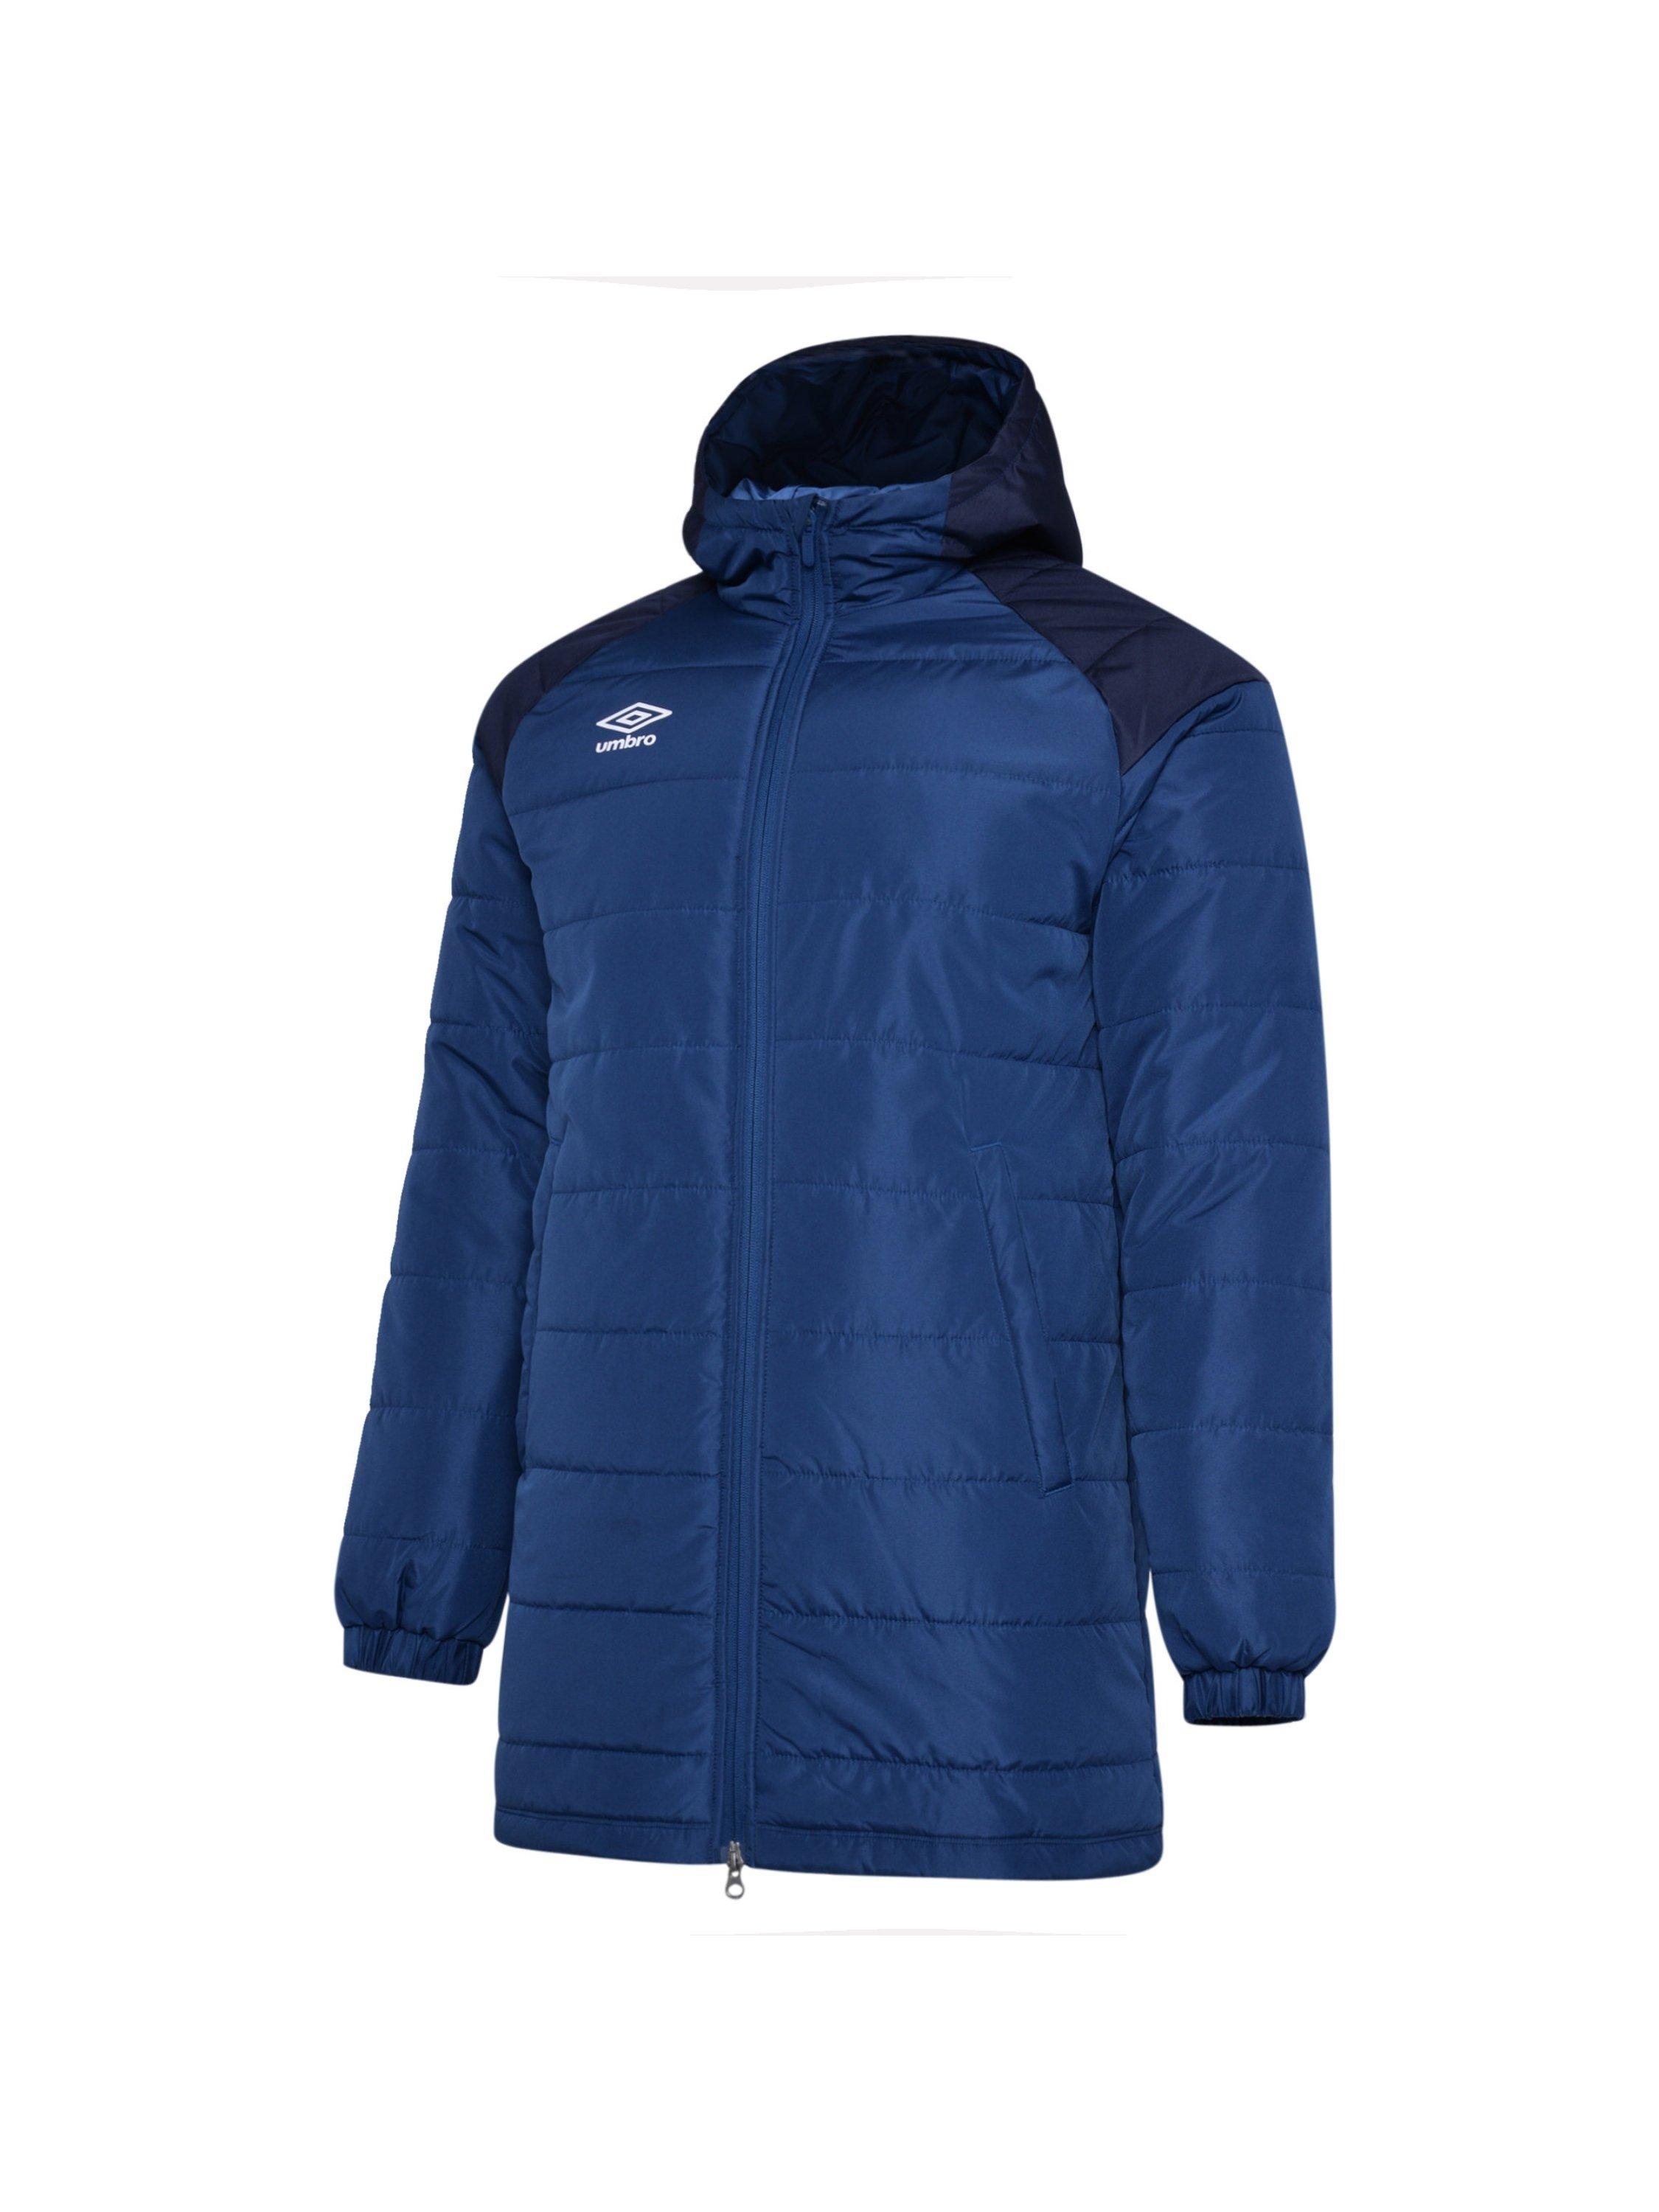 Утепленная куртка (с капюшоном) Umbro, синий куртка umbro силуэт свободный утепленная размер xxxl синий